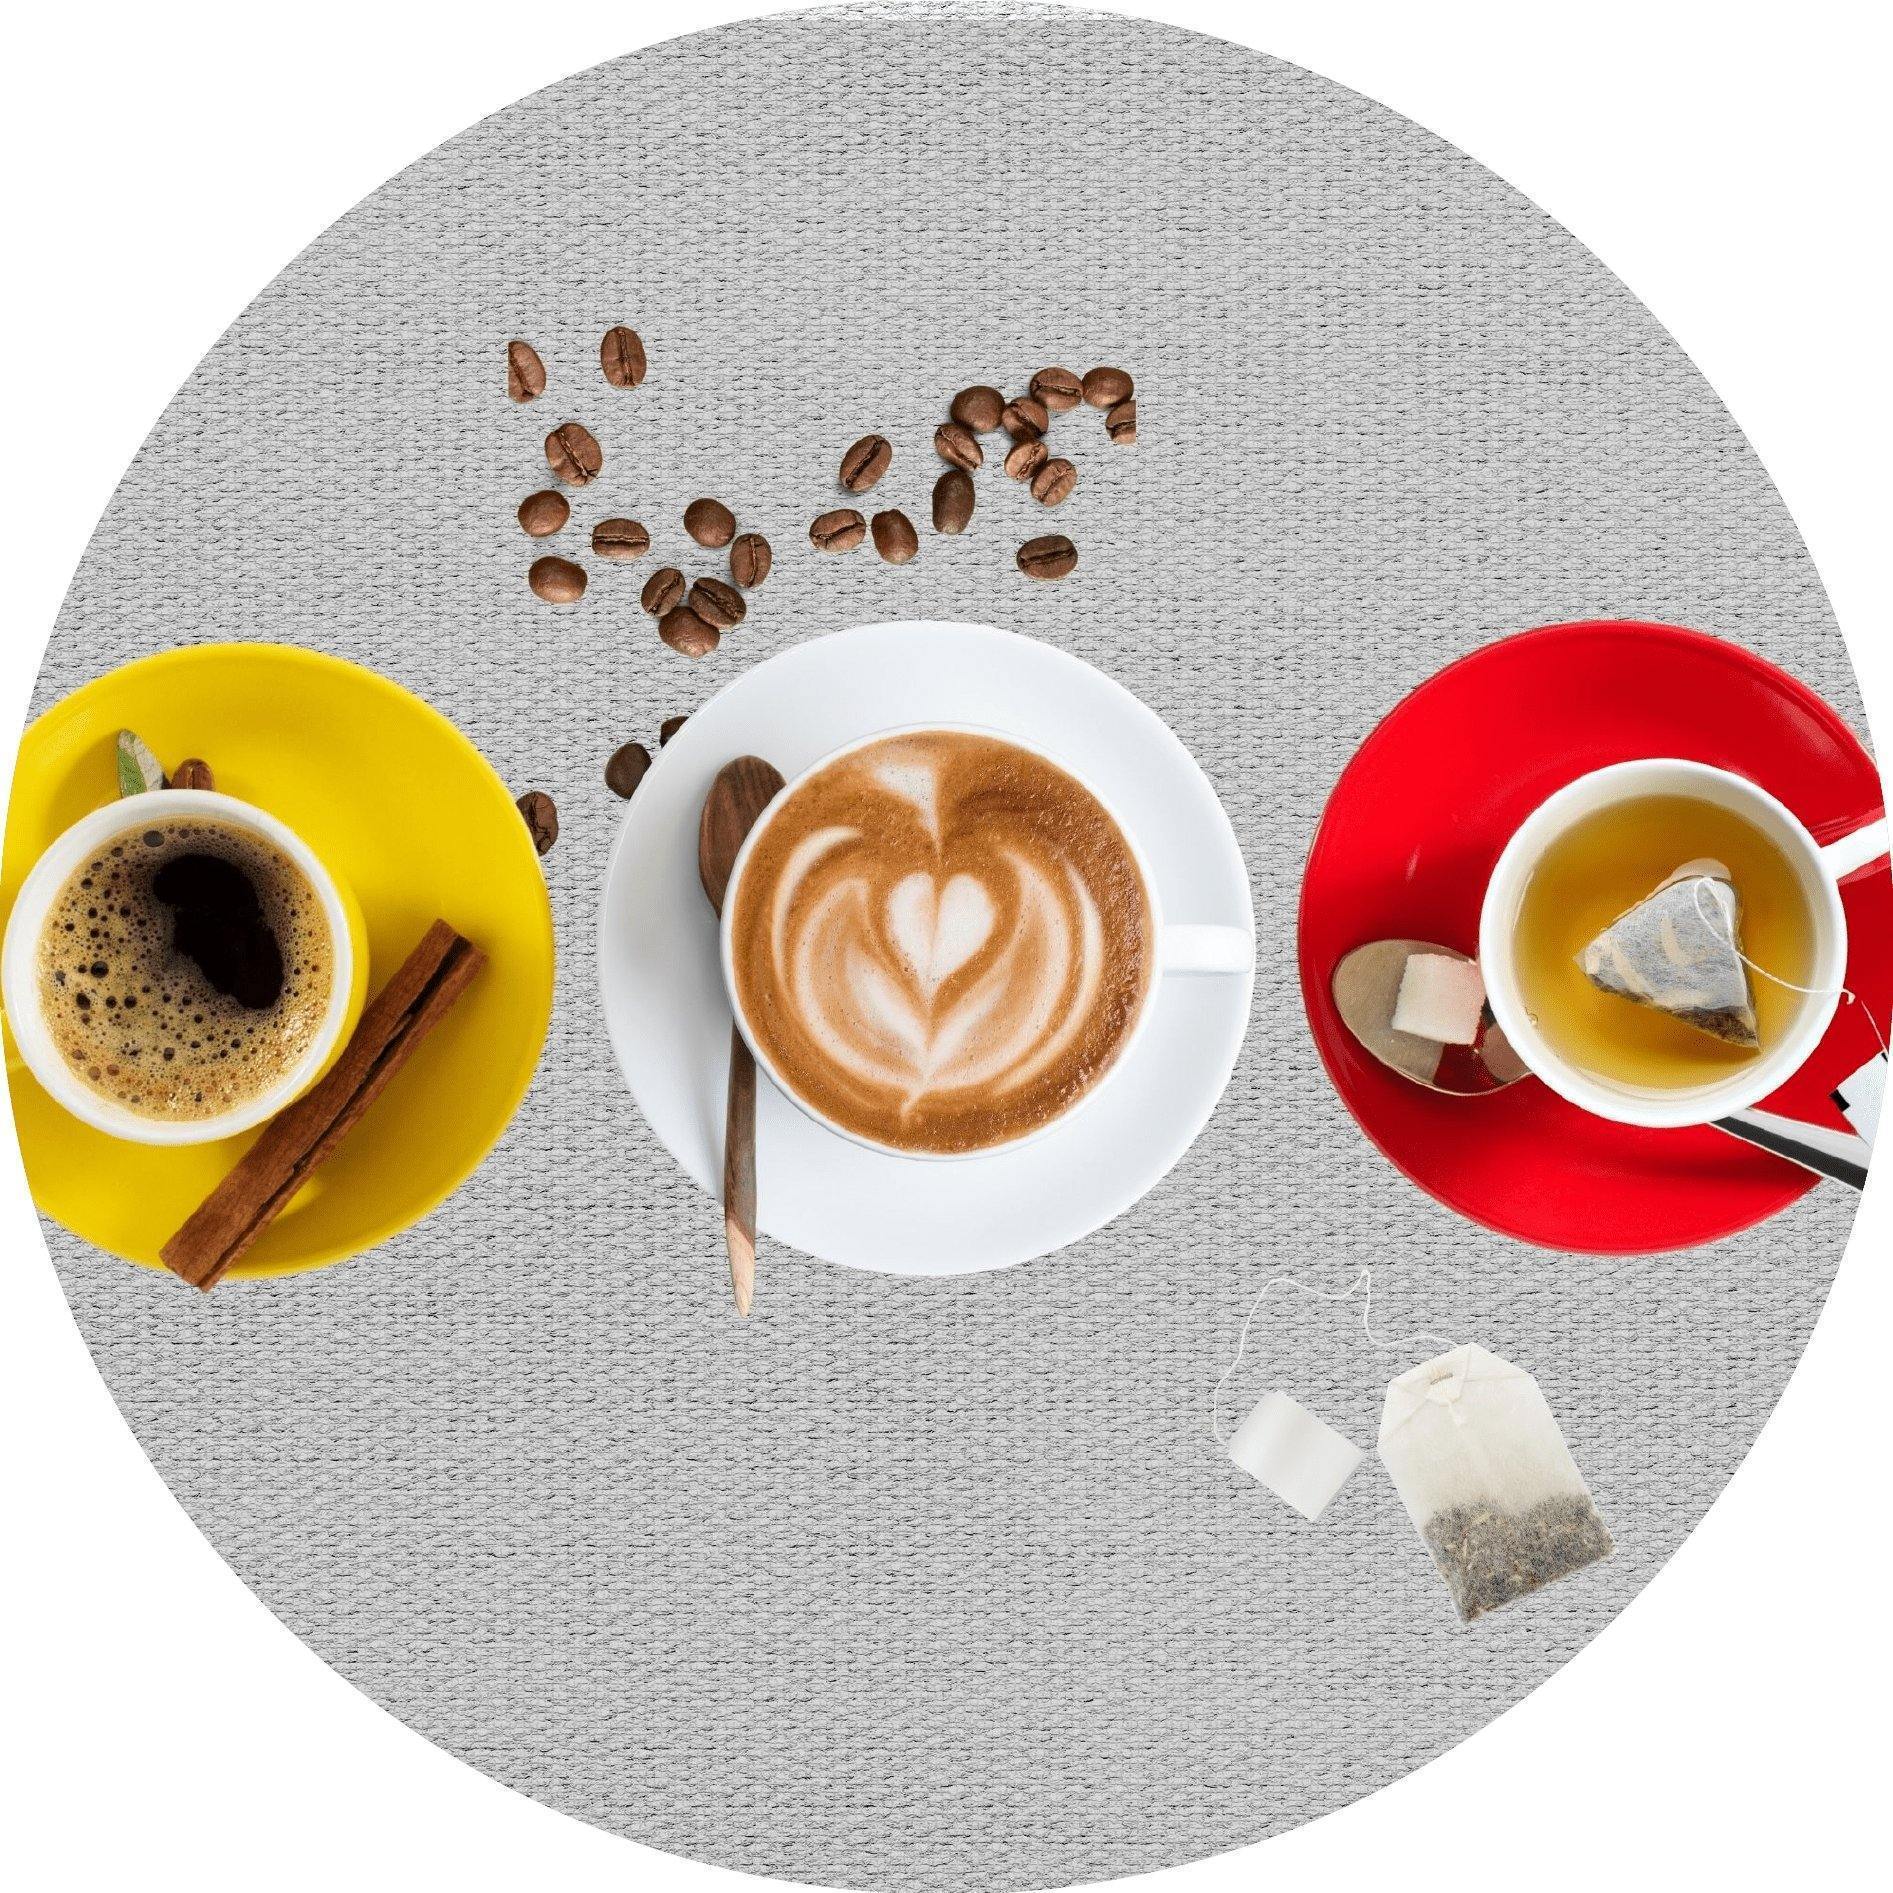 Coffee & Tea | Tastermonial